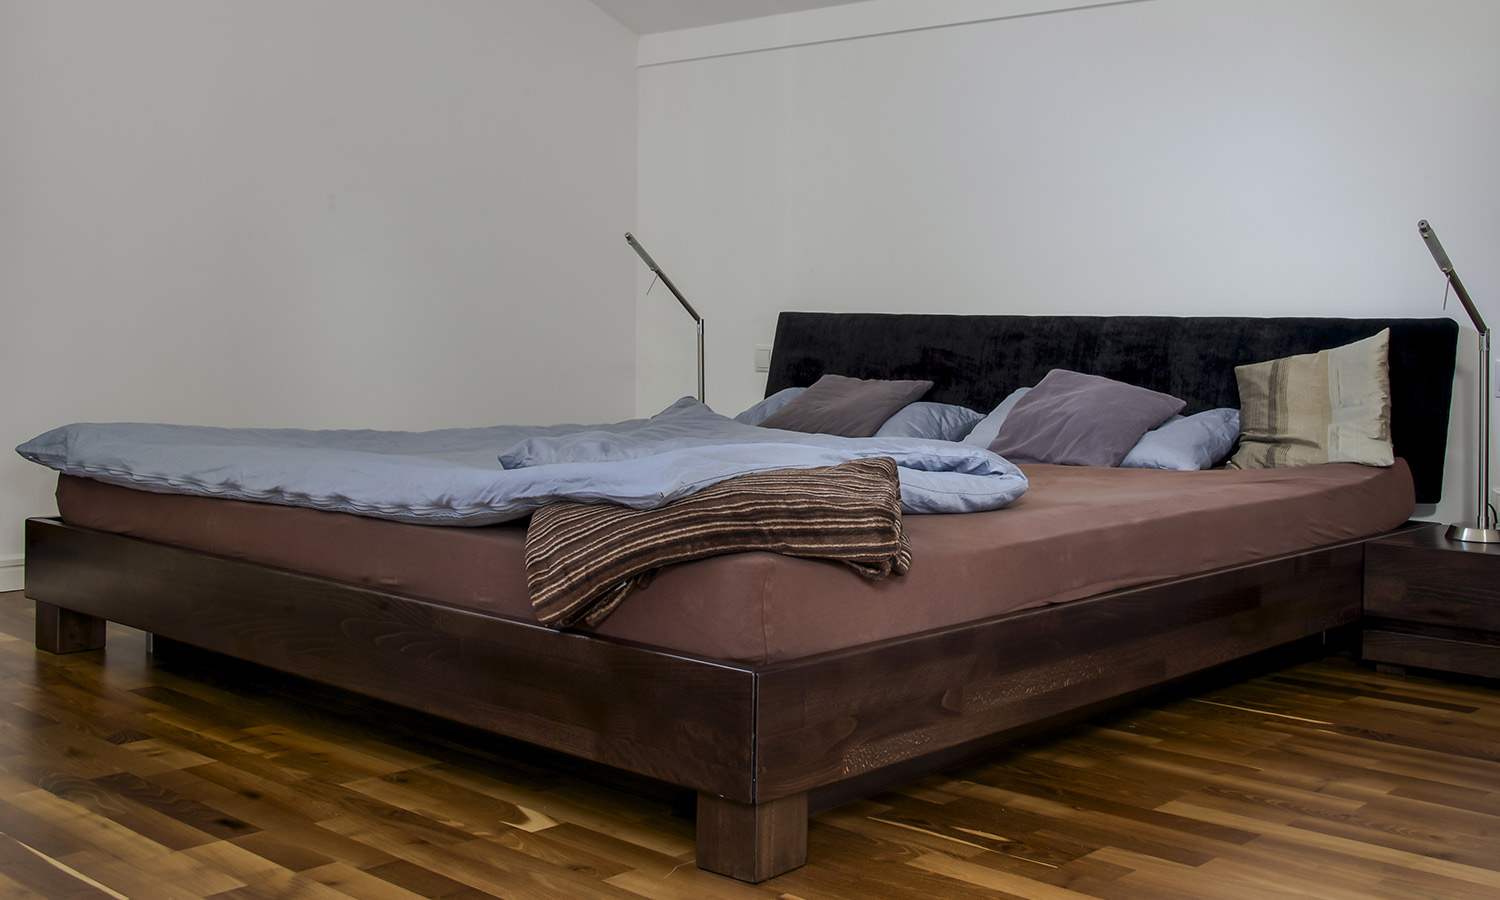 A waterbed mattress on a wodden frame